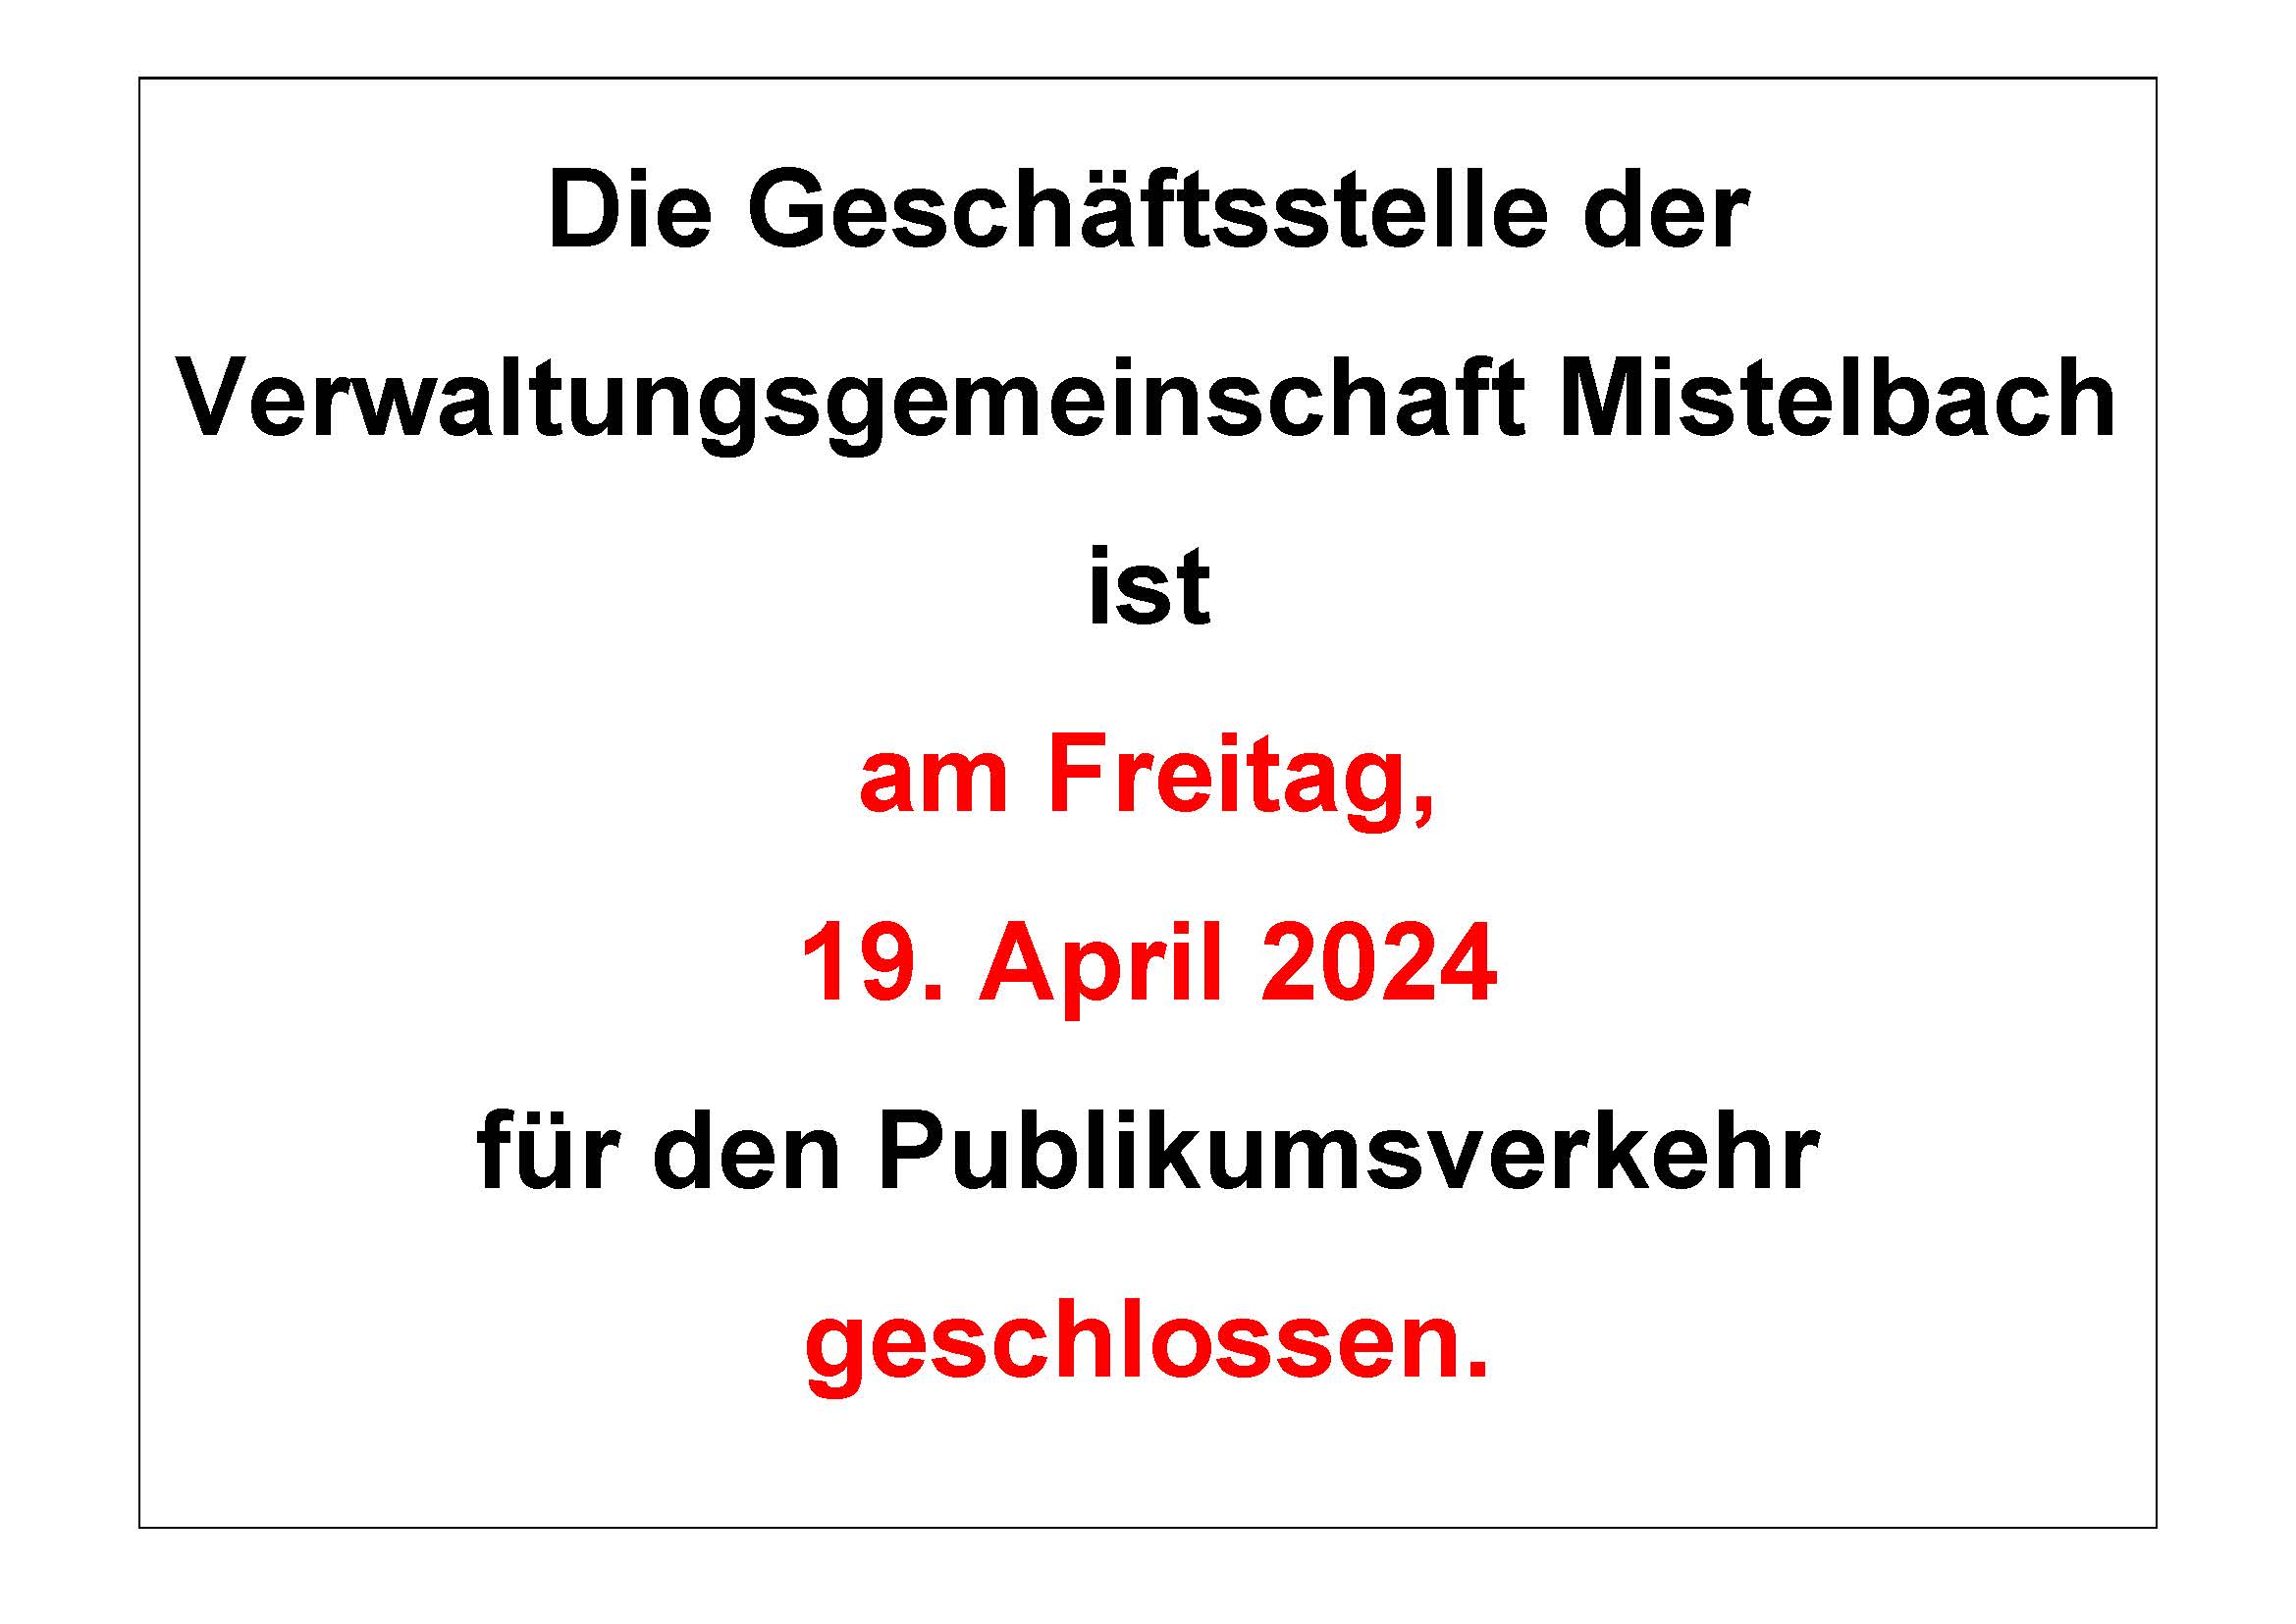 Verwaltungsgemeinschaft Mistelbach am Freitag, 19. April 2024 geschlossen